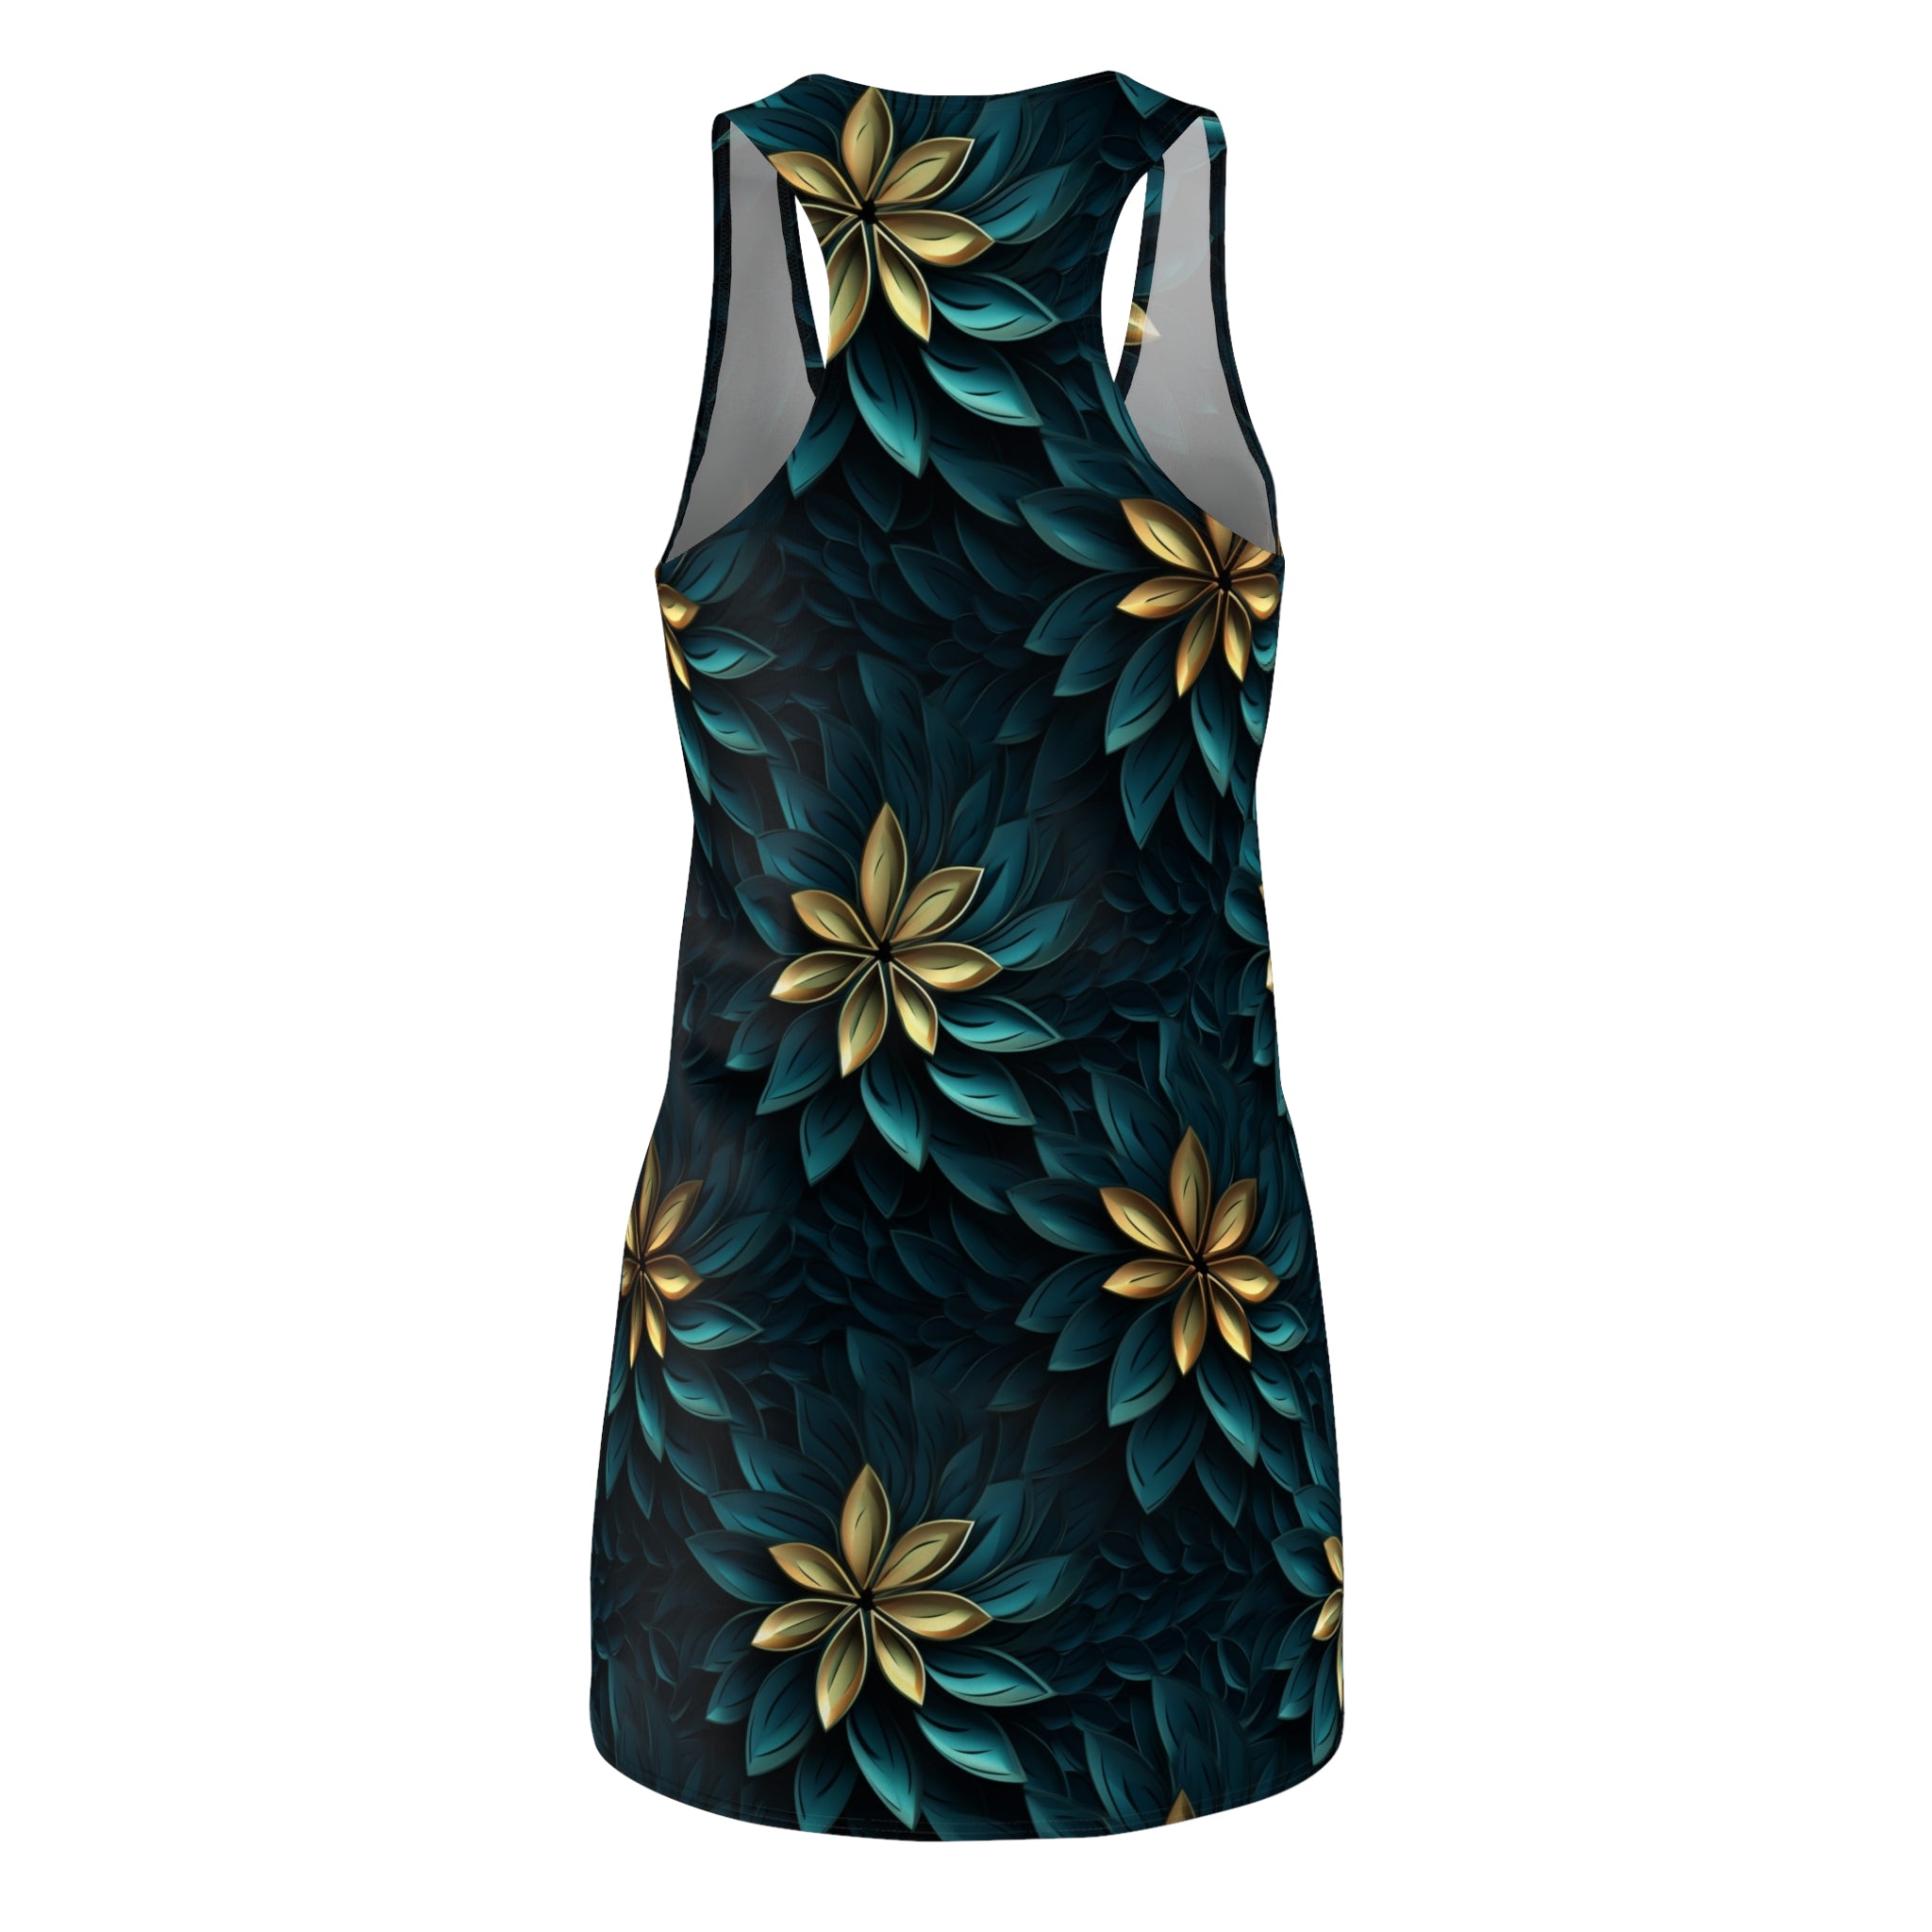 Women's Cut & Sew Racerback Dress (AOP) - Seamless Abstract Designs 01